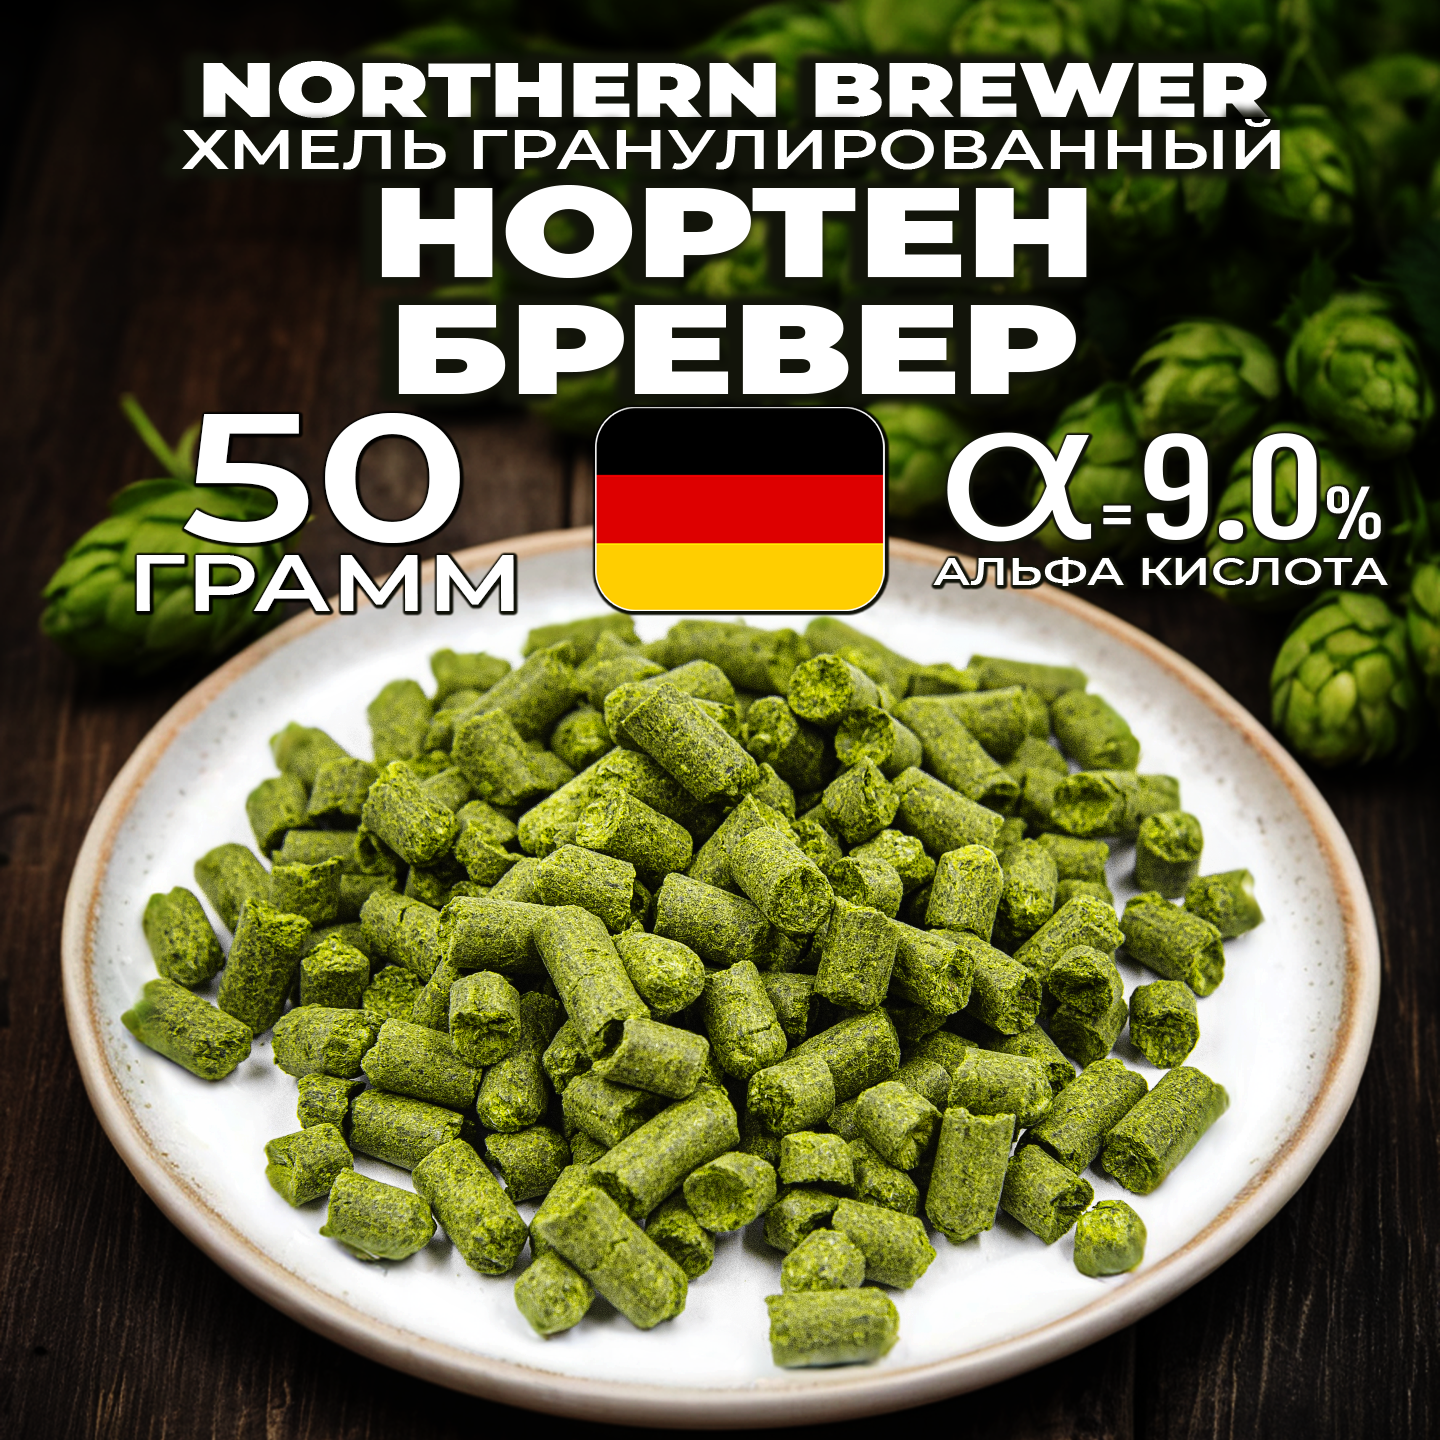 Хмель для пива Нортен Бревер (Northern Brewer) гранулированный, горько-ароматный, 50г